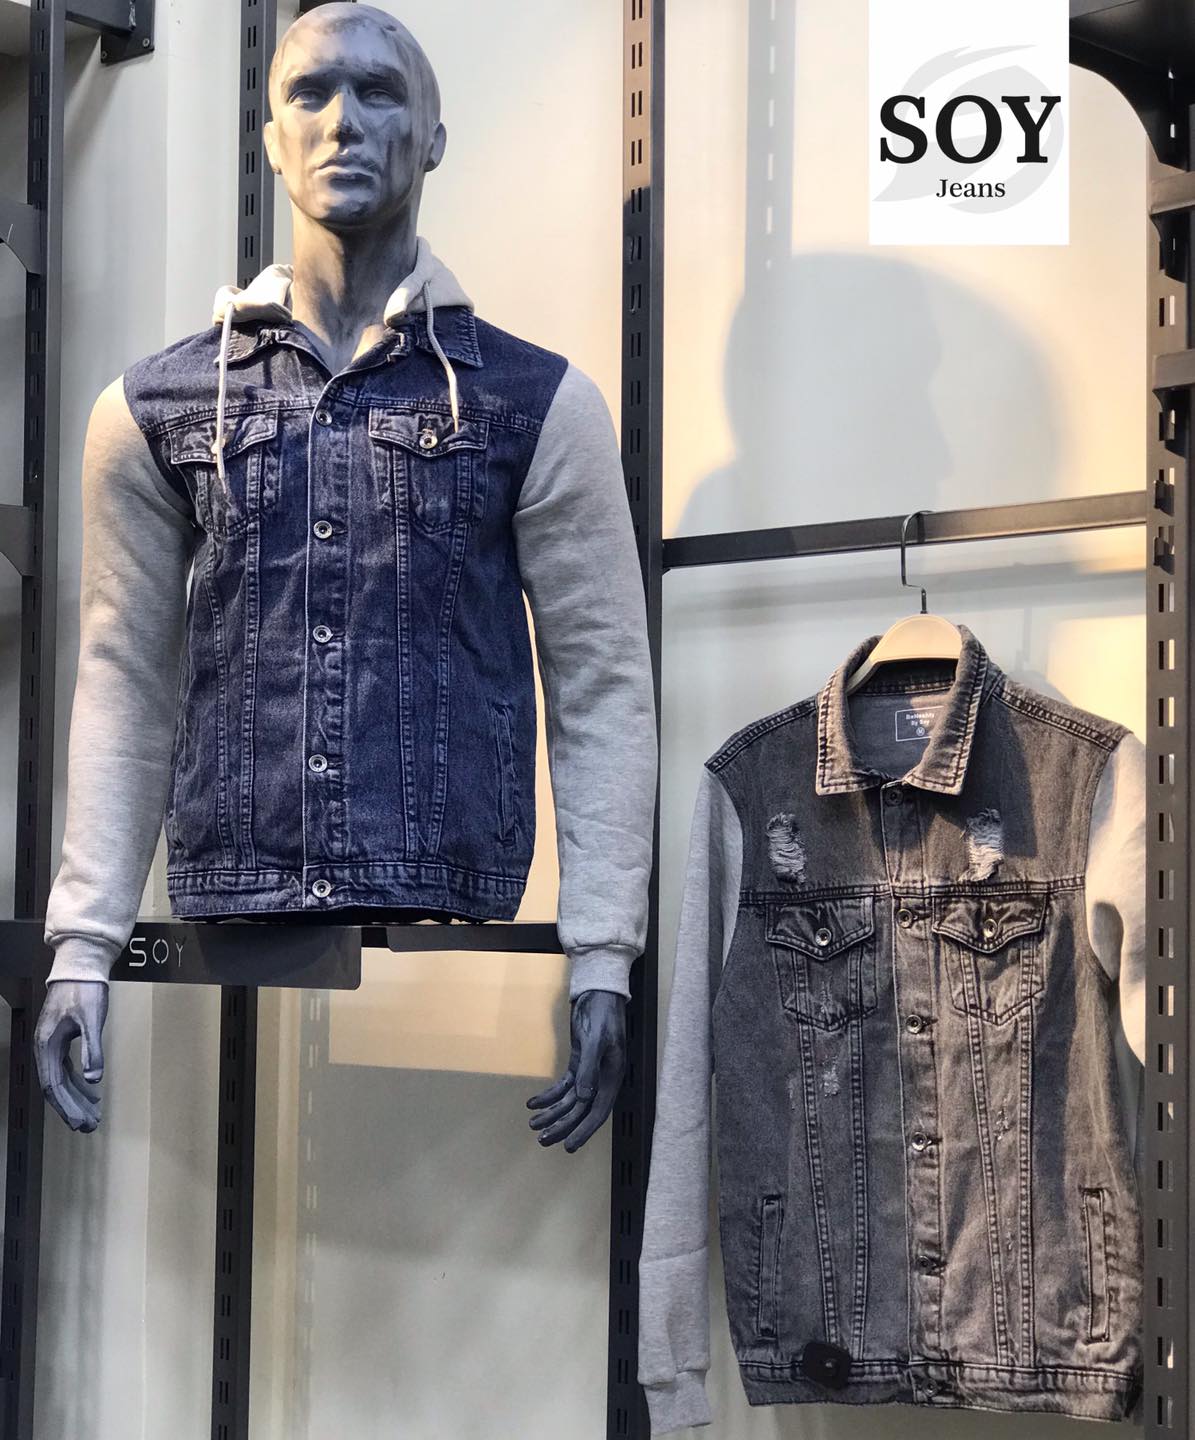 شركة Soy Jeans لتصنيع الملابس